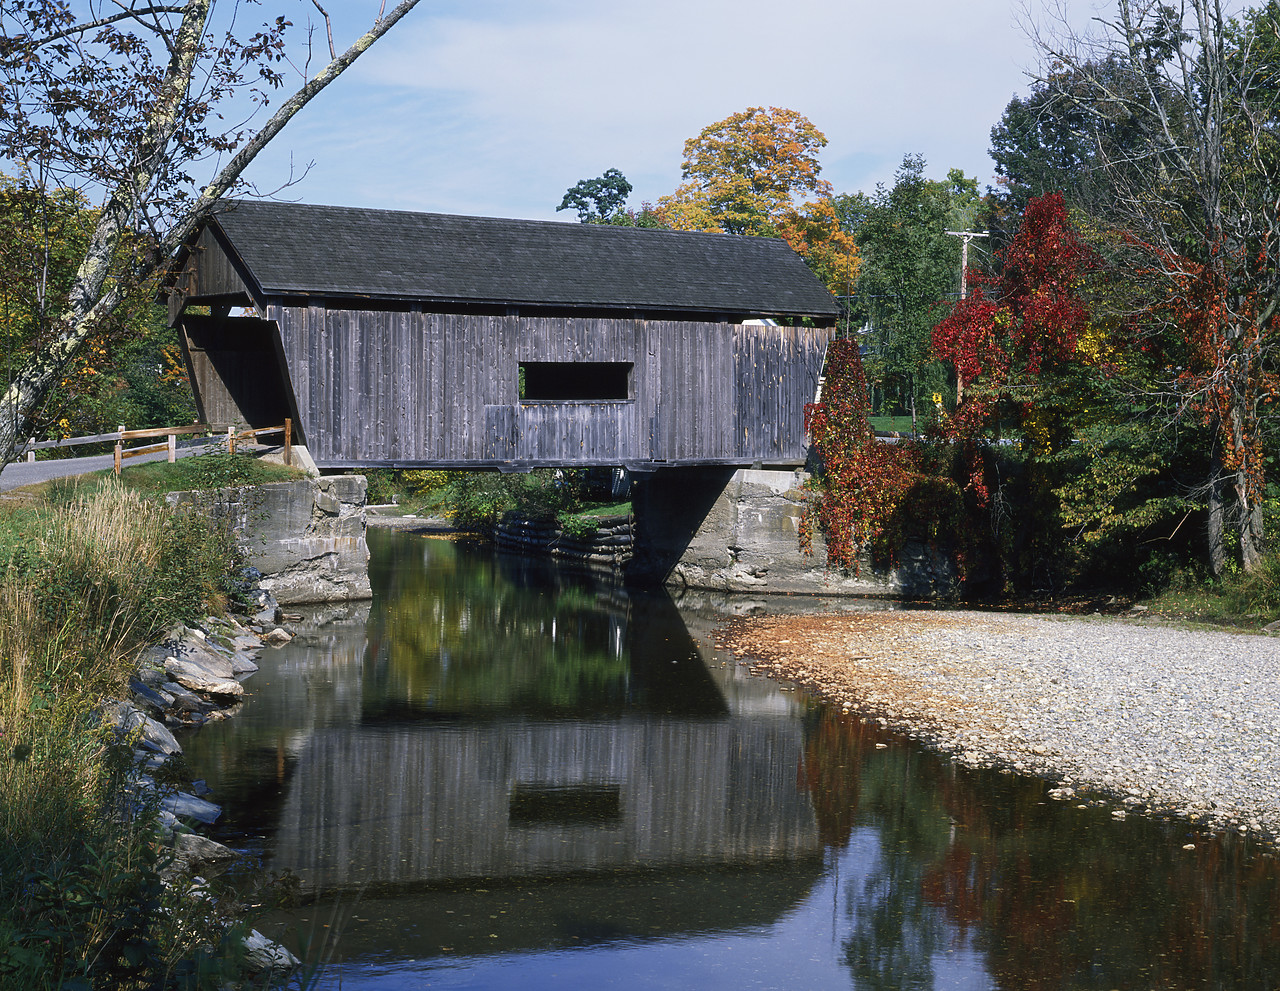 #903198-1 - Covered Bridge, Warren, Vermont, USA